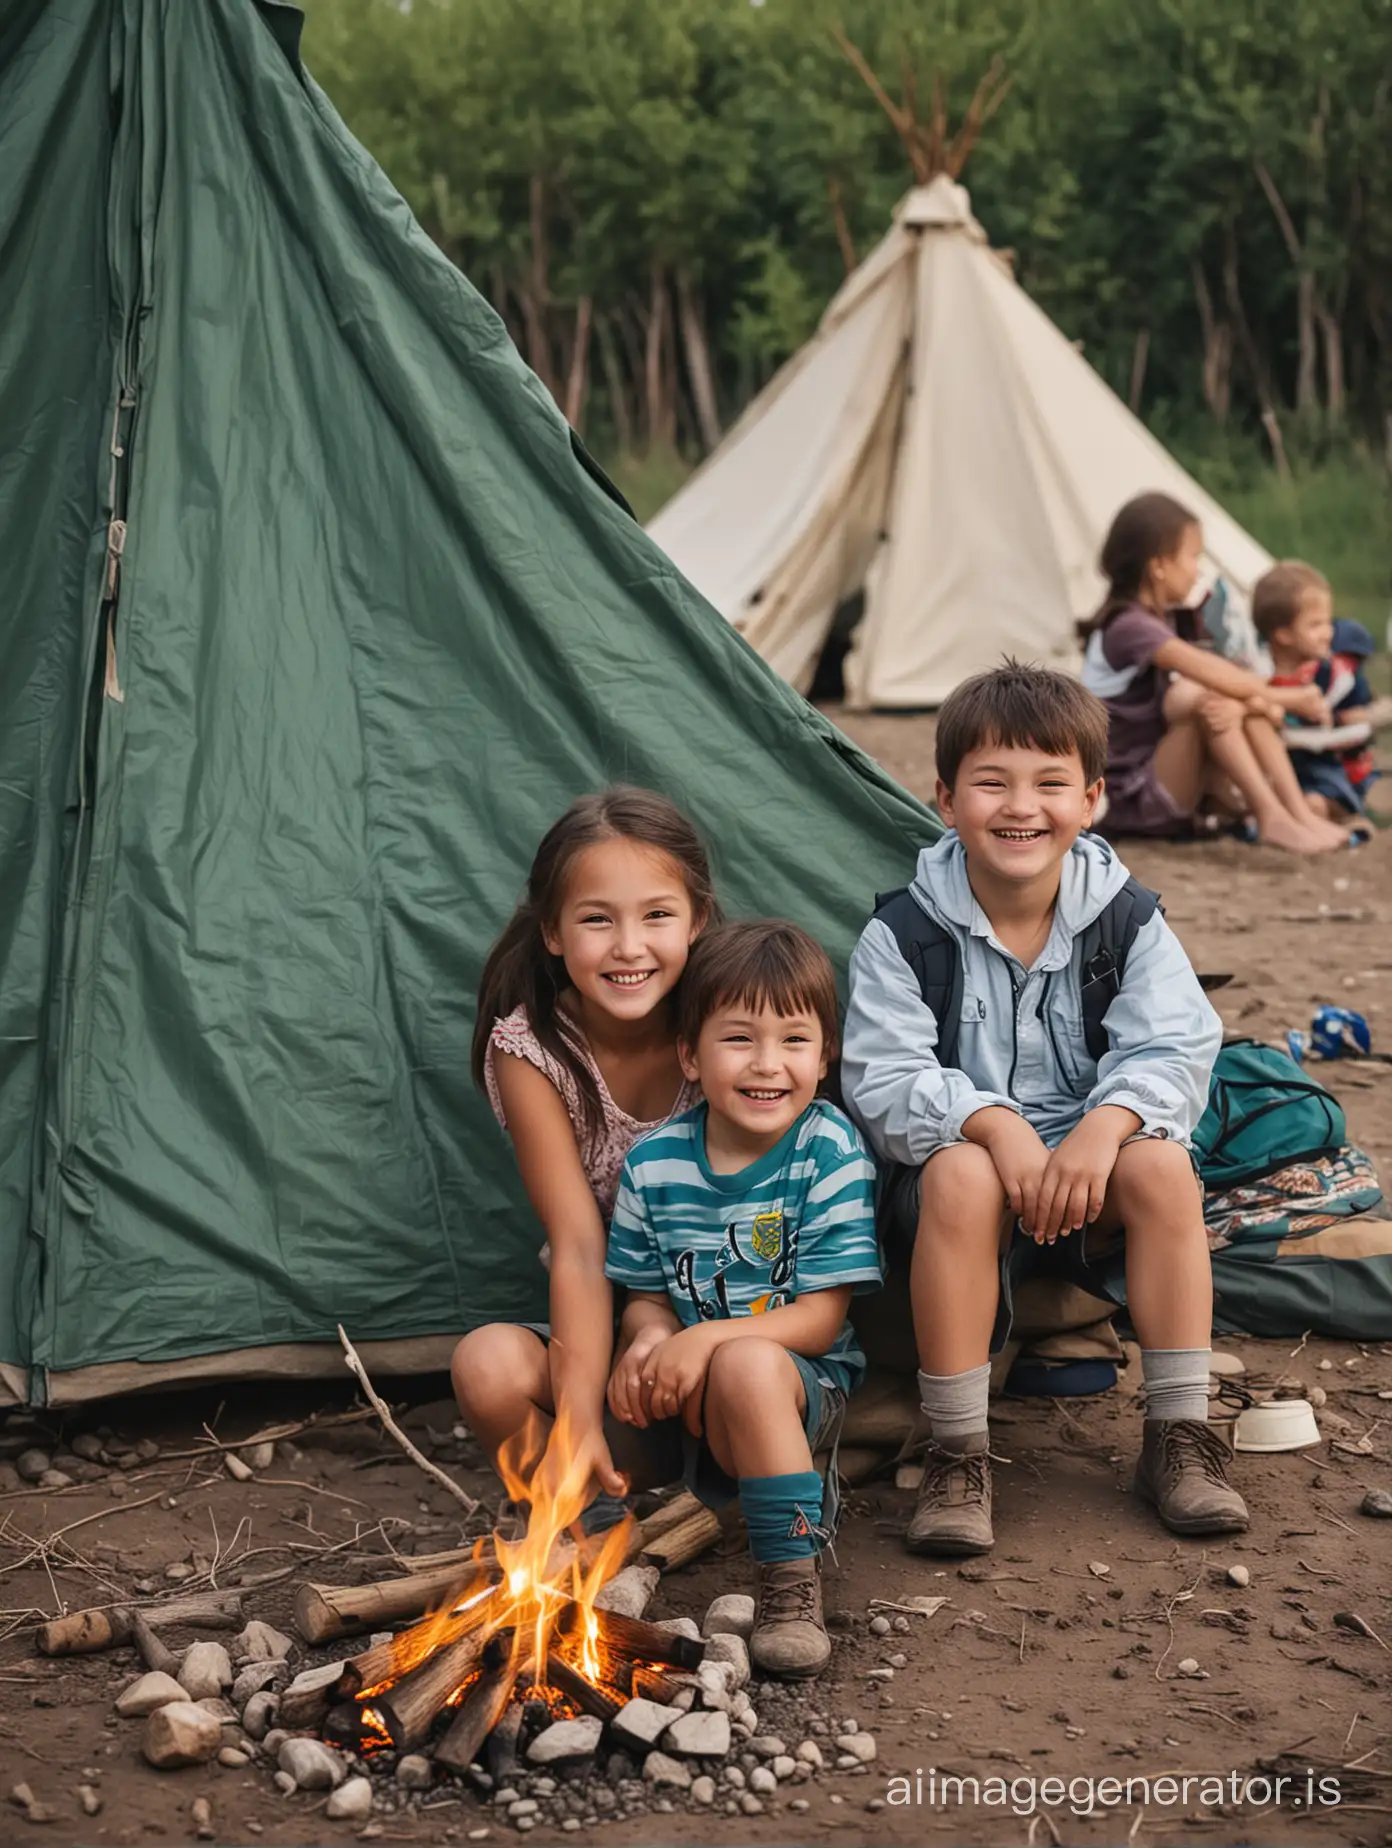 Kazakh-Children-Enjoying-Summer-Campfire-Near-Tourist-Tents